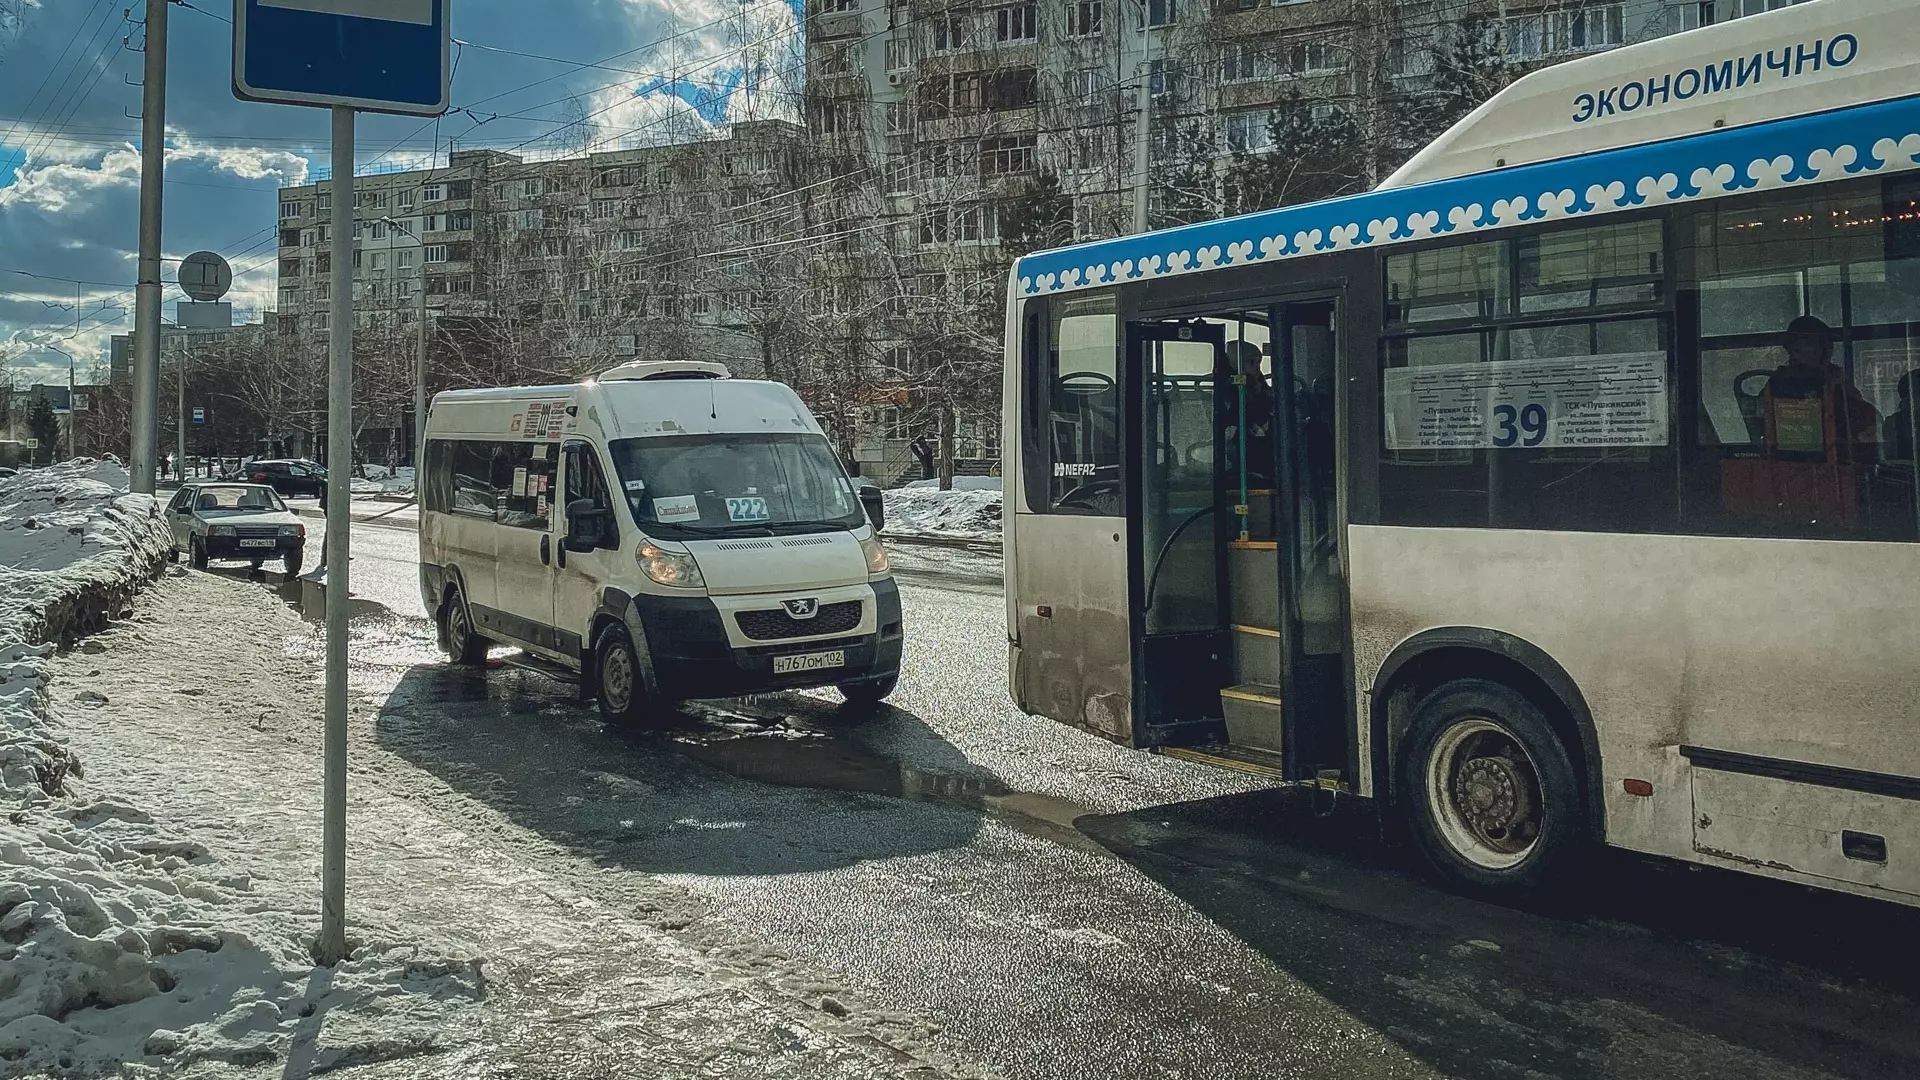 Многие районы Уфы испытывают плотные пробки, а местные жители высказывают гнев по поводу транспортной системы. Подробности в материале mkset.ru